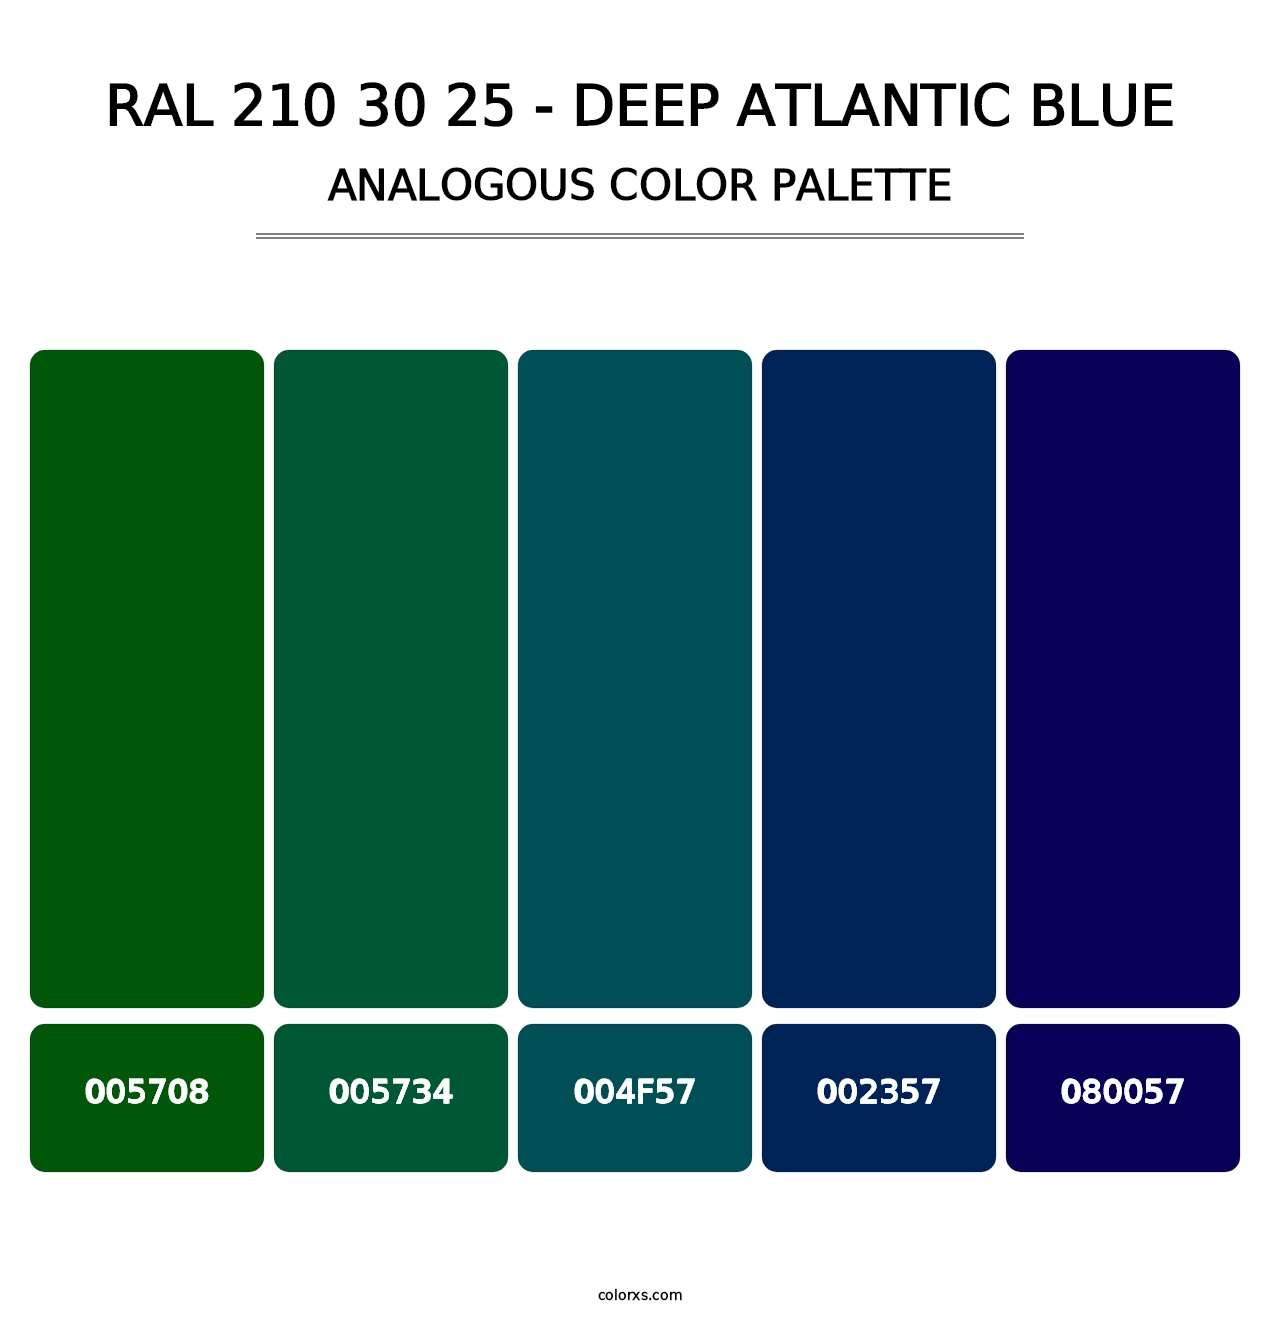 RAL 210 30 25 - Deep Atlantic Blue - Analogous Color Palette